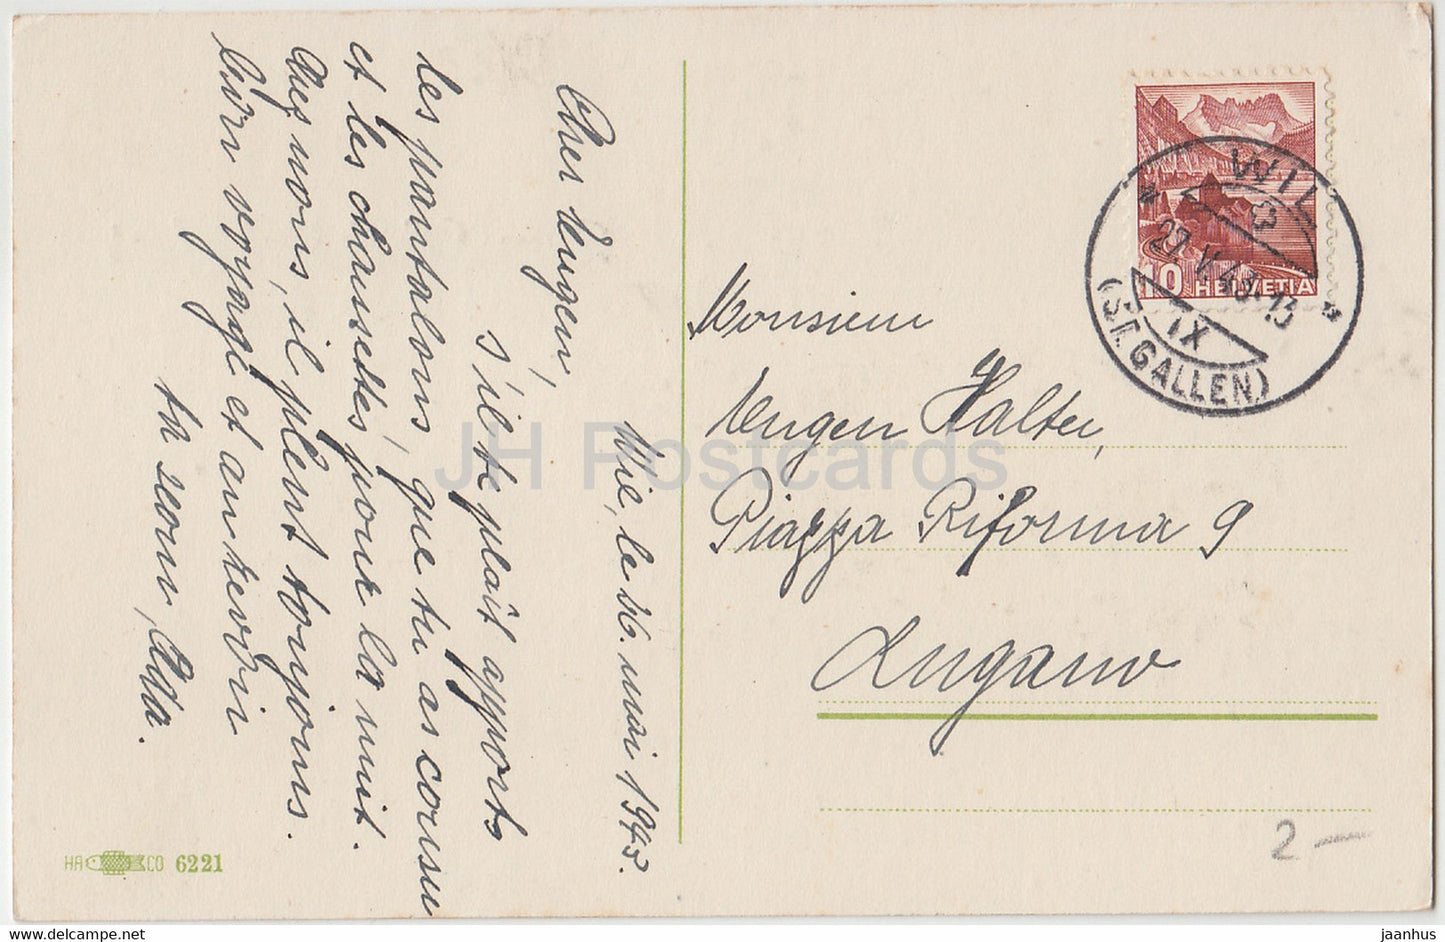 Neujahrsgrußkarte - Die Besten Grusse - Blumen - HA CO 6221 - alte Postkarte - 1943 - Deutschland - gebraucht